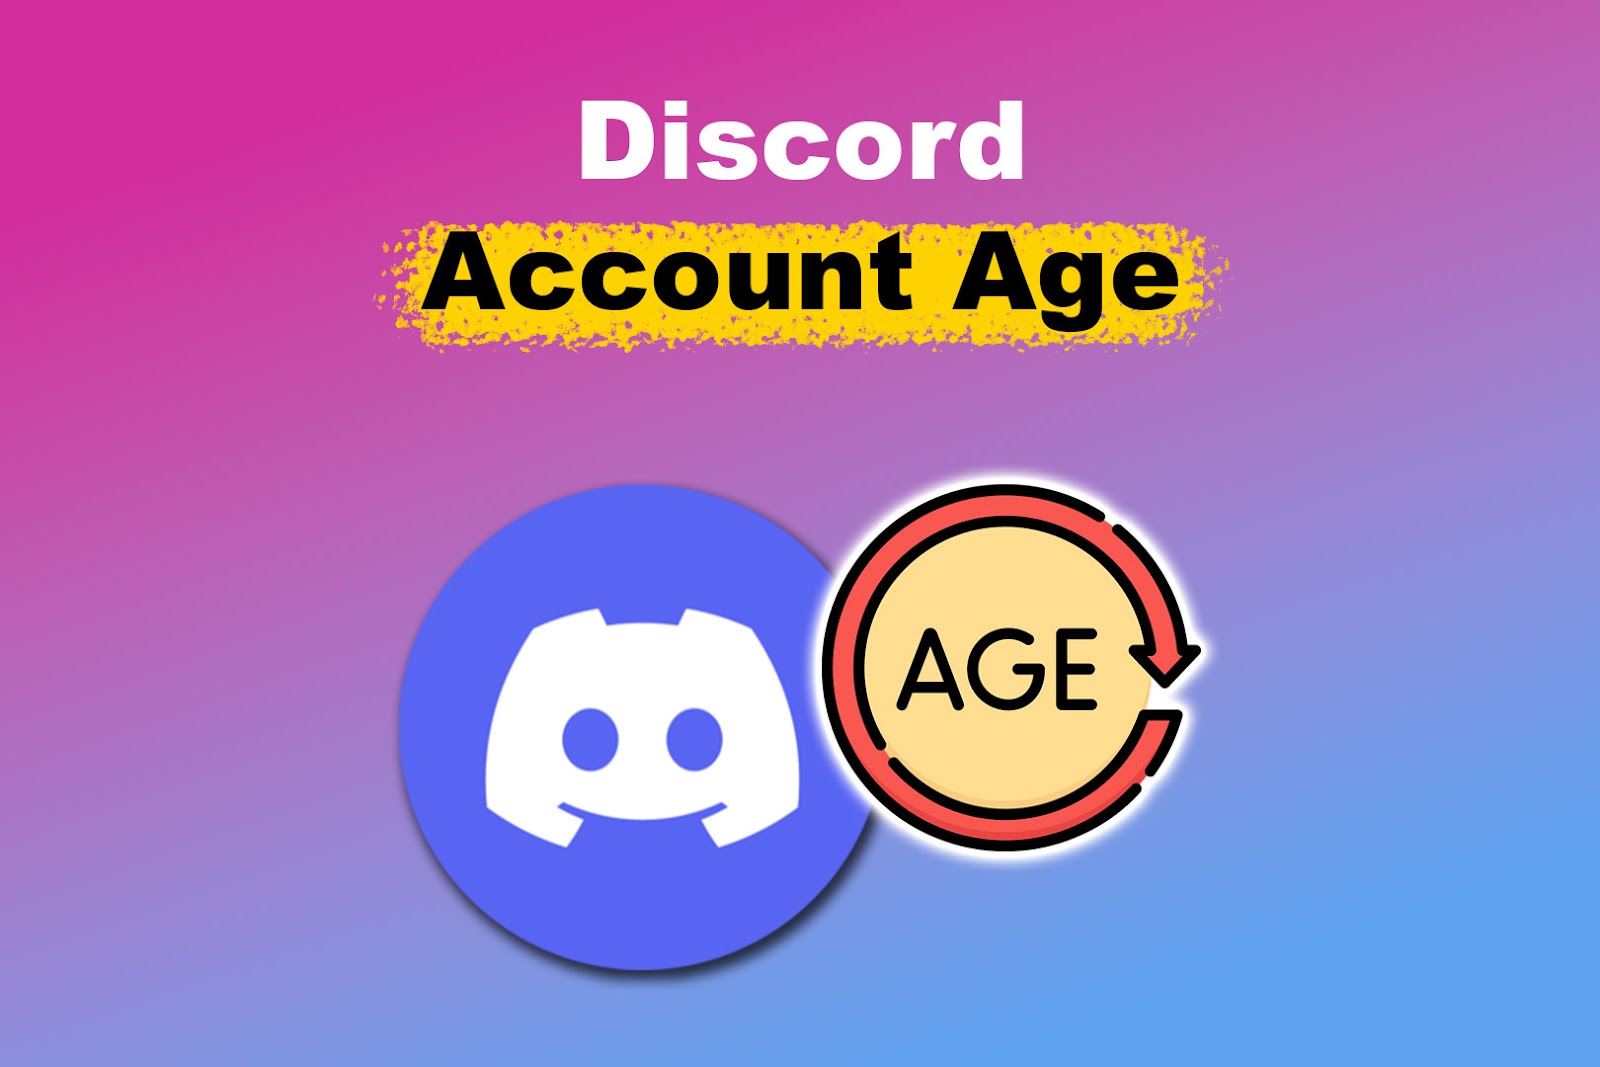 Check Discord Account Age